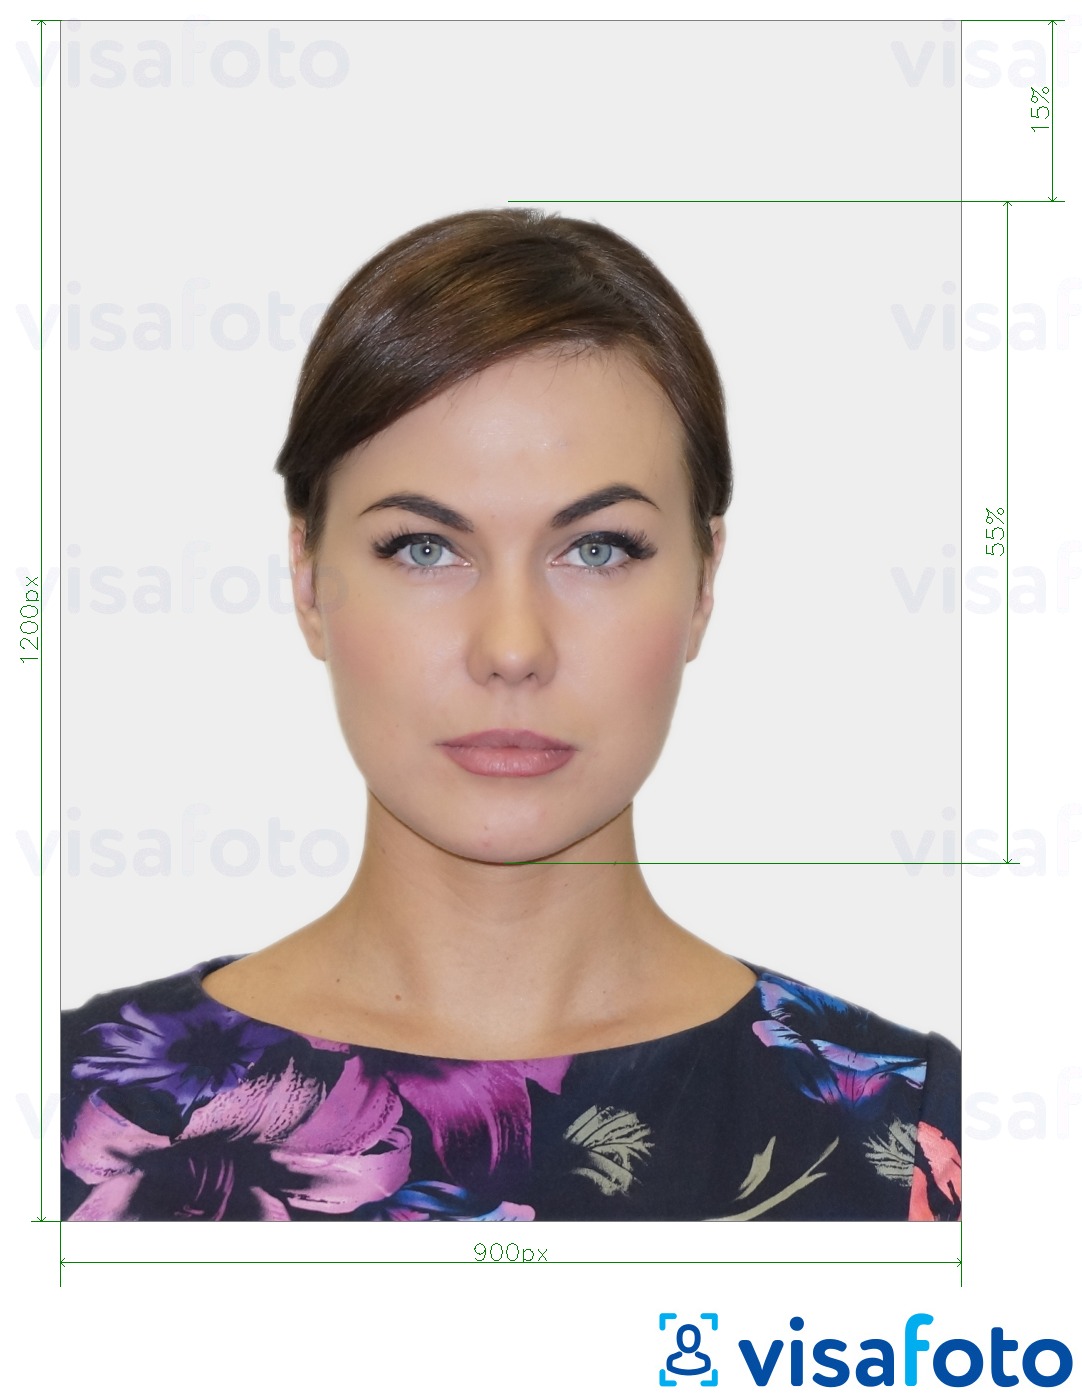 Ejemplo de foto para Pasaporte del Reino Unido en línea con la especificación del tamaño exacto